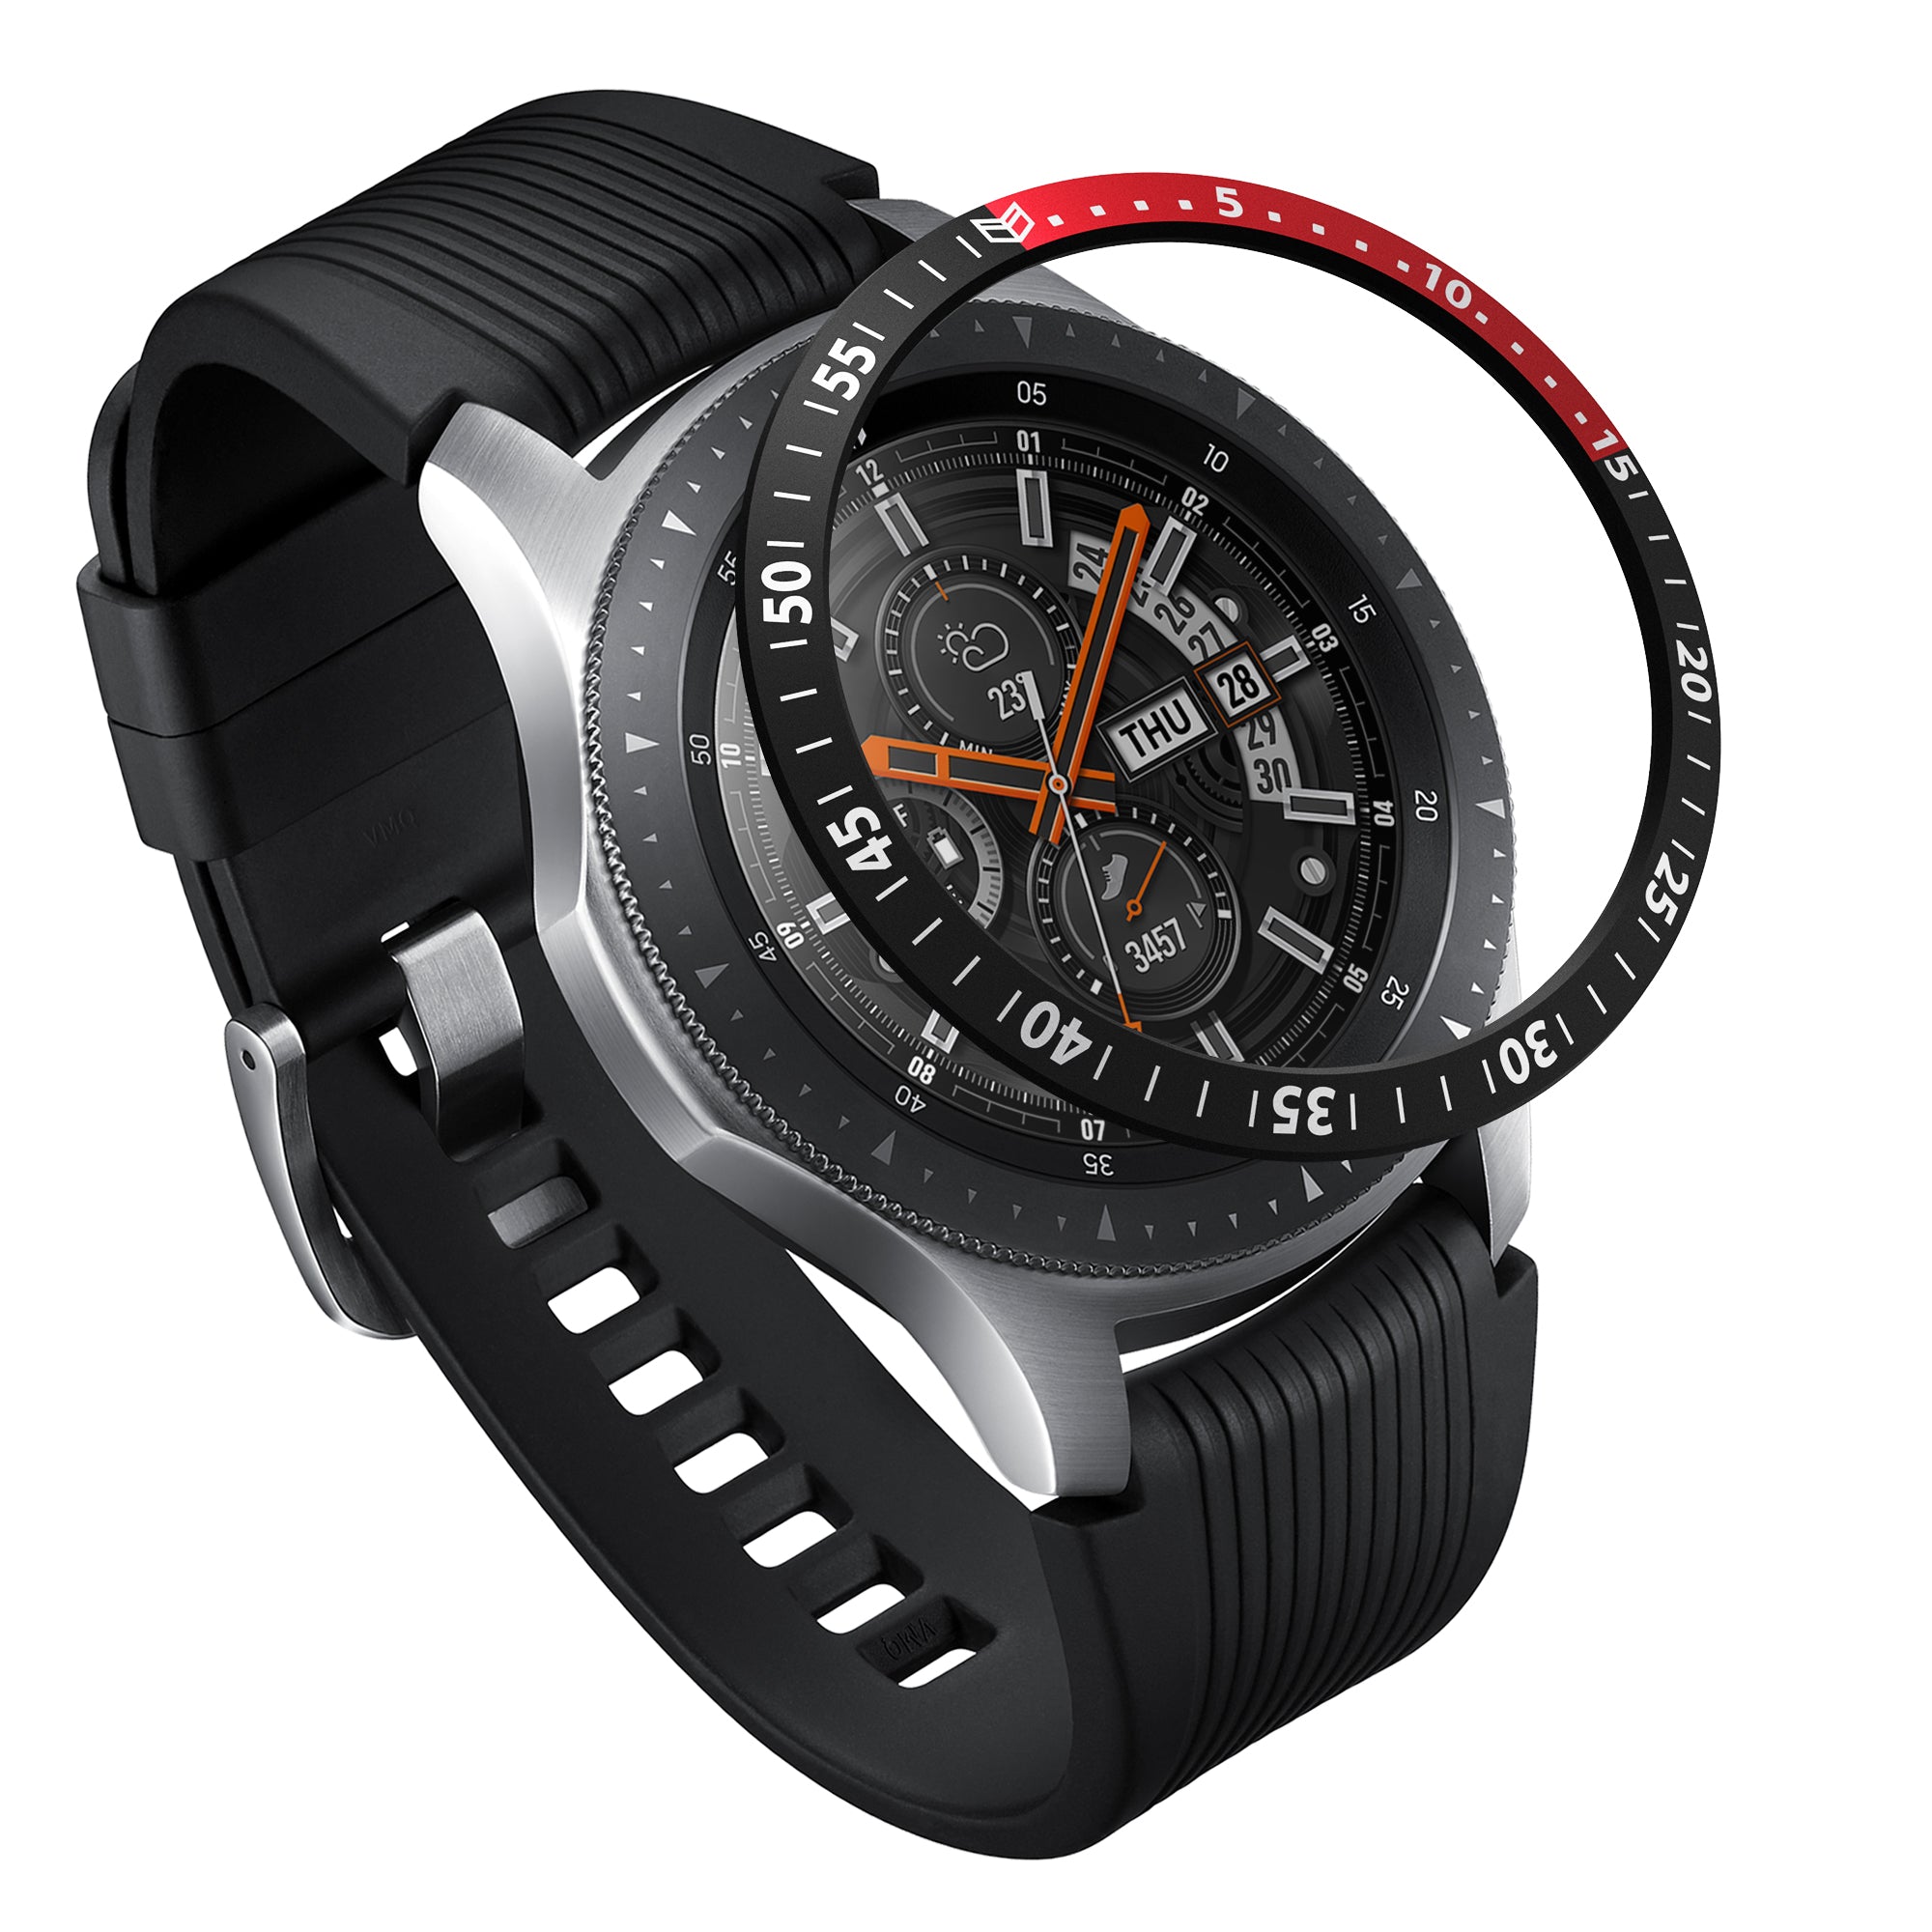 Galaxy Watch 46mm Ringke Bezel Styling 46-09 – Ringke Official Store